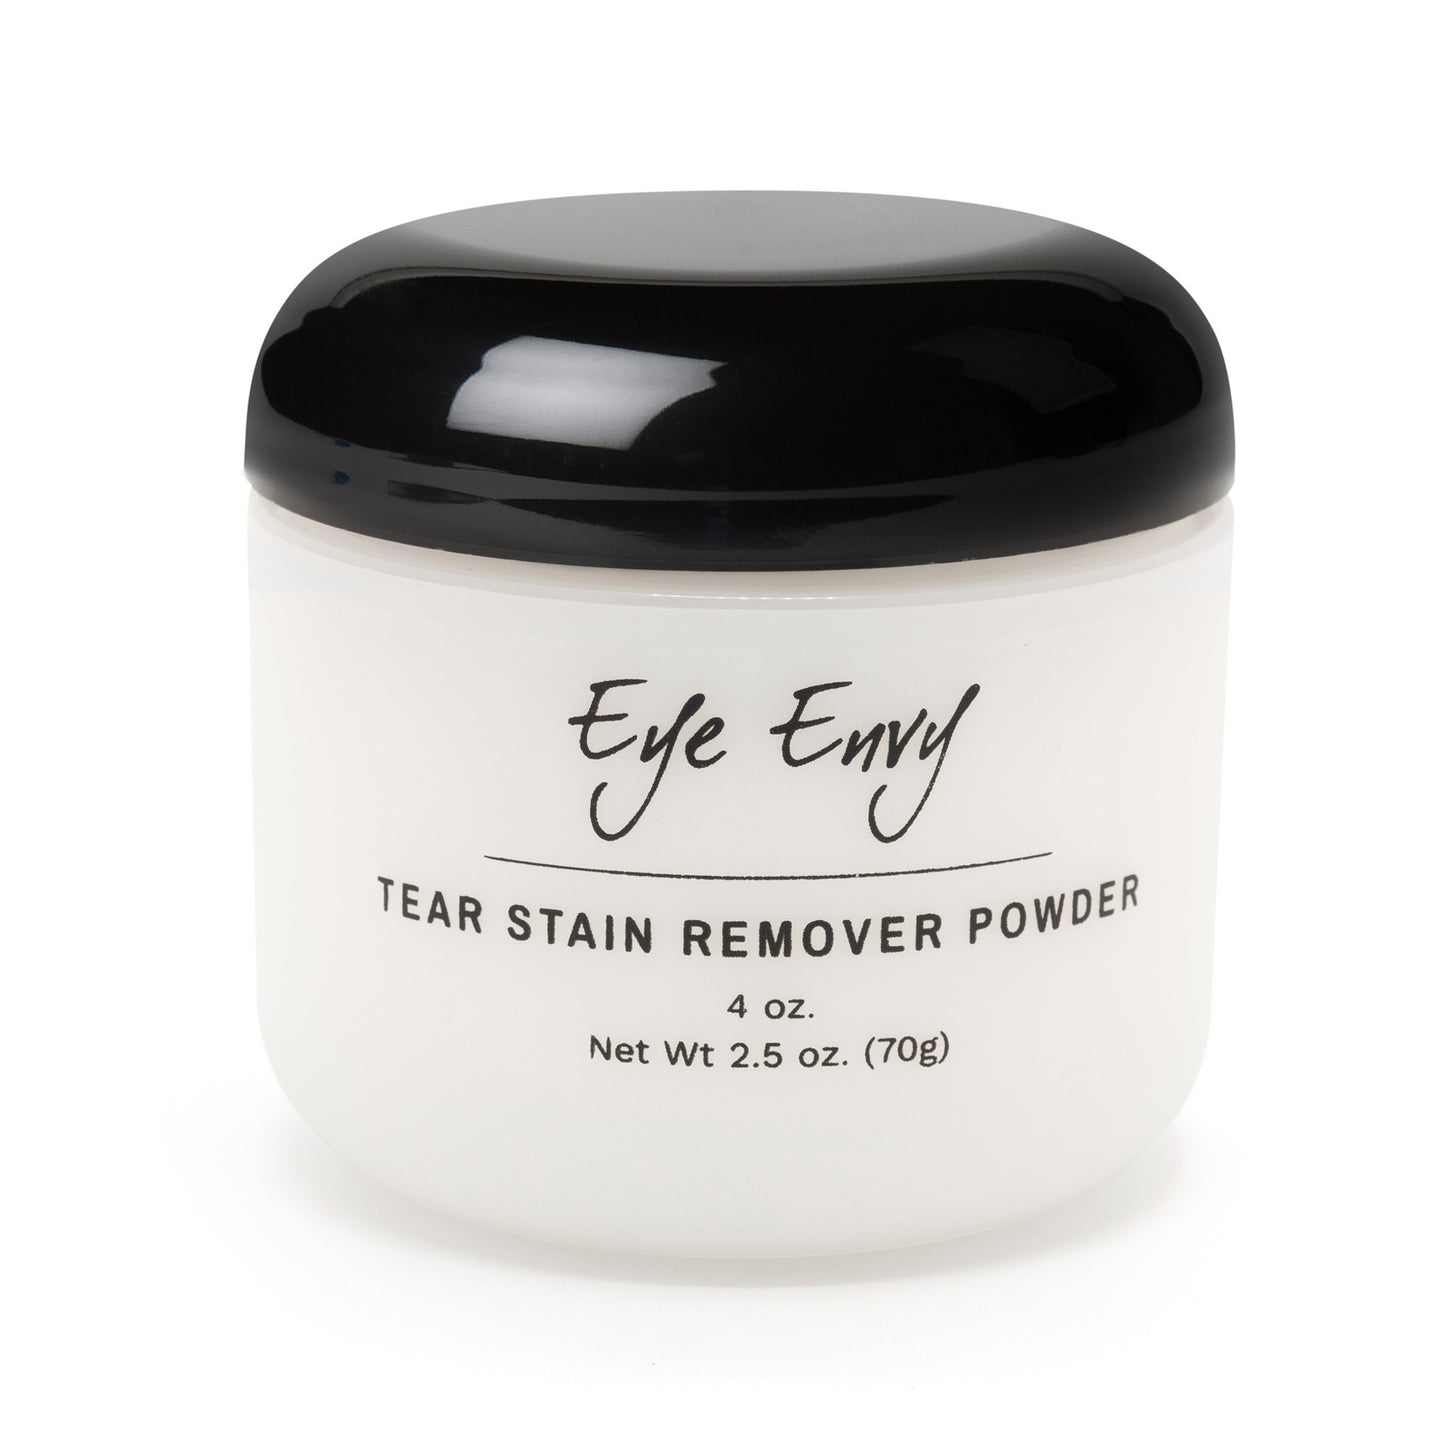 Eye Envy Tear Stain Remover Powder, Tränenfleckentferner Puder Hunde und Katzen